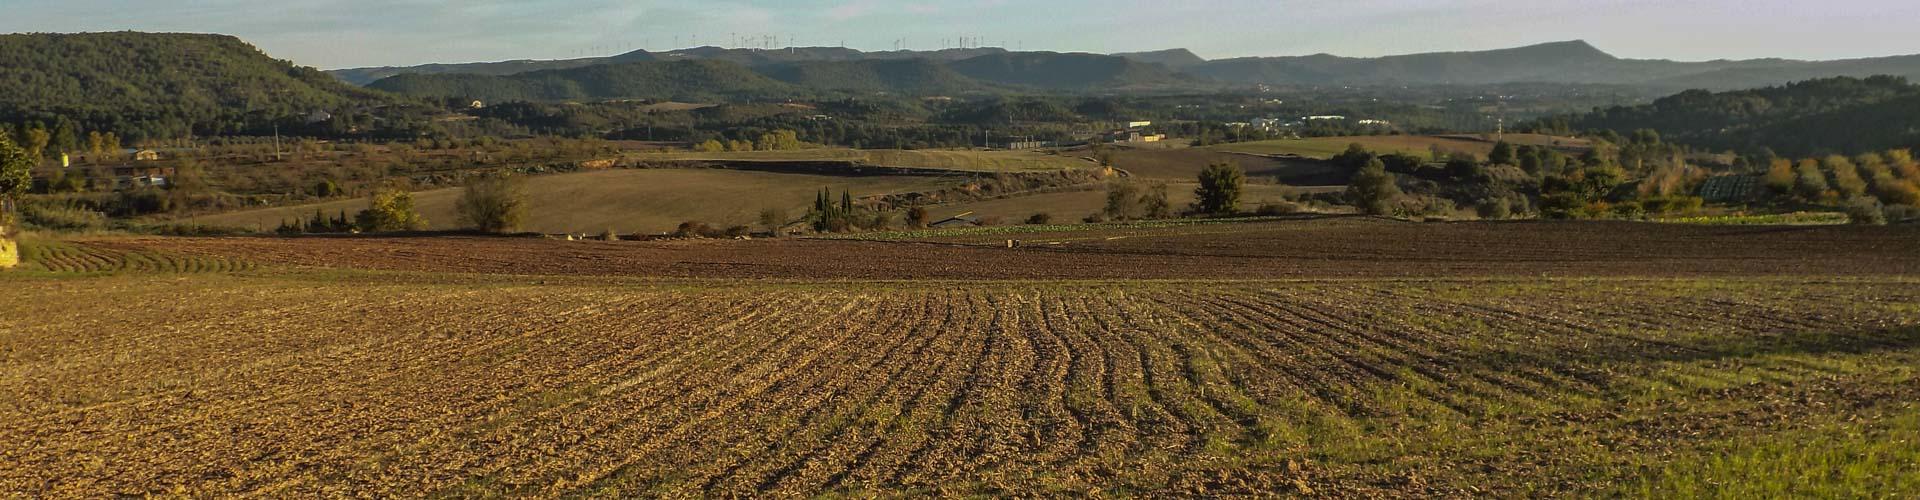 Paisatge agrícola de Sant Martí de Tous